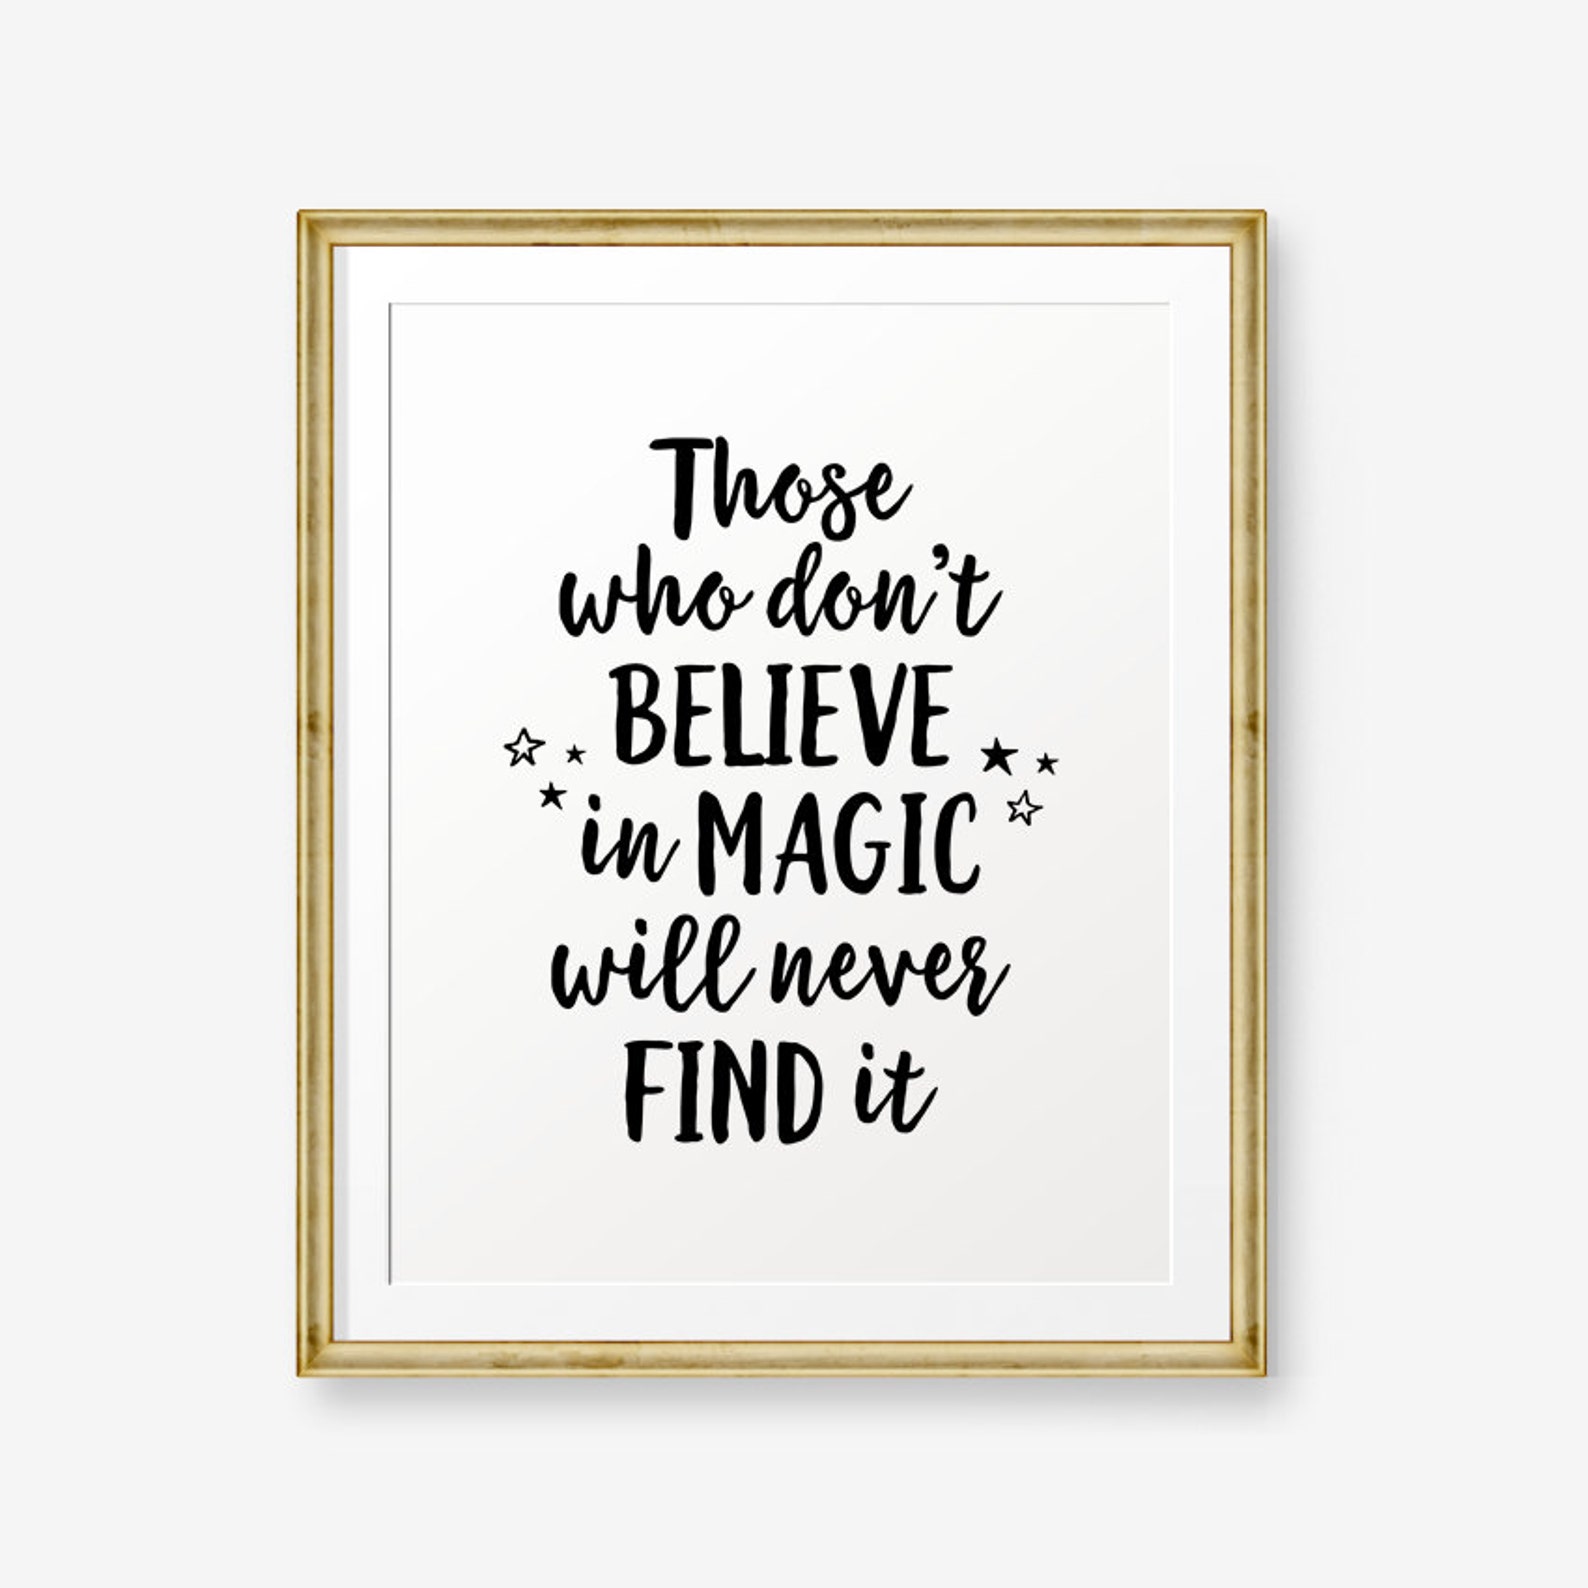 Magic wills. Дневник believe in Magic. He still believe Magic. Quotes about Magic. Believe in Dream and Magic купить.